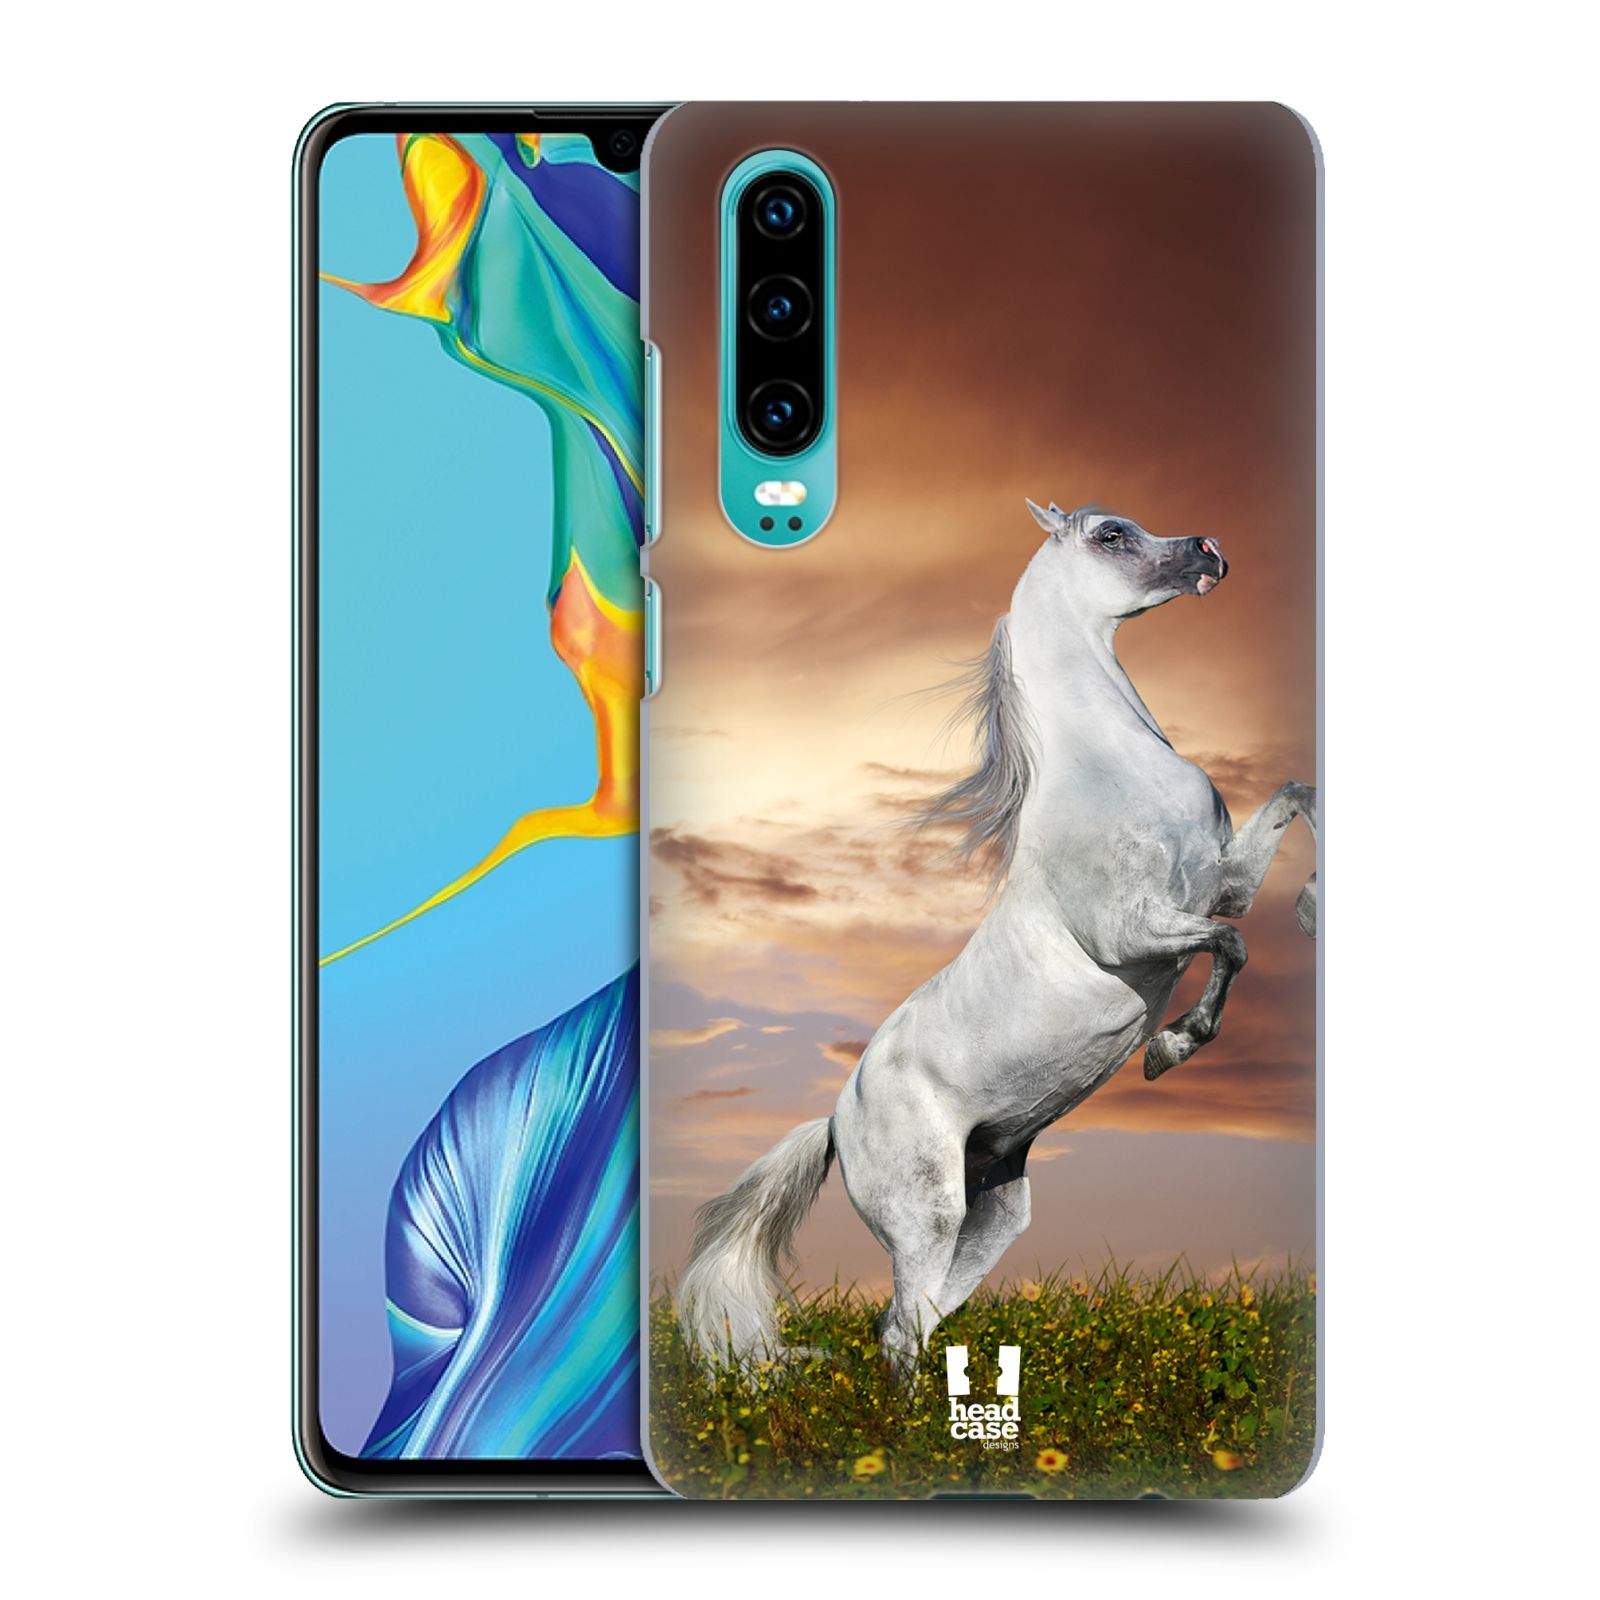 Zadní obal pro mobil Huawei P30 - HEAD CASE - Svět zvířat divoký kůň